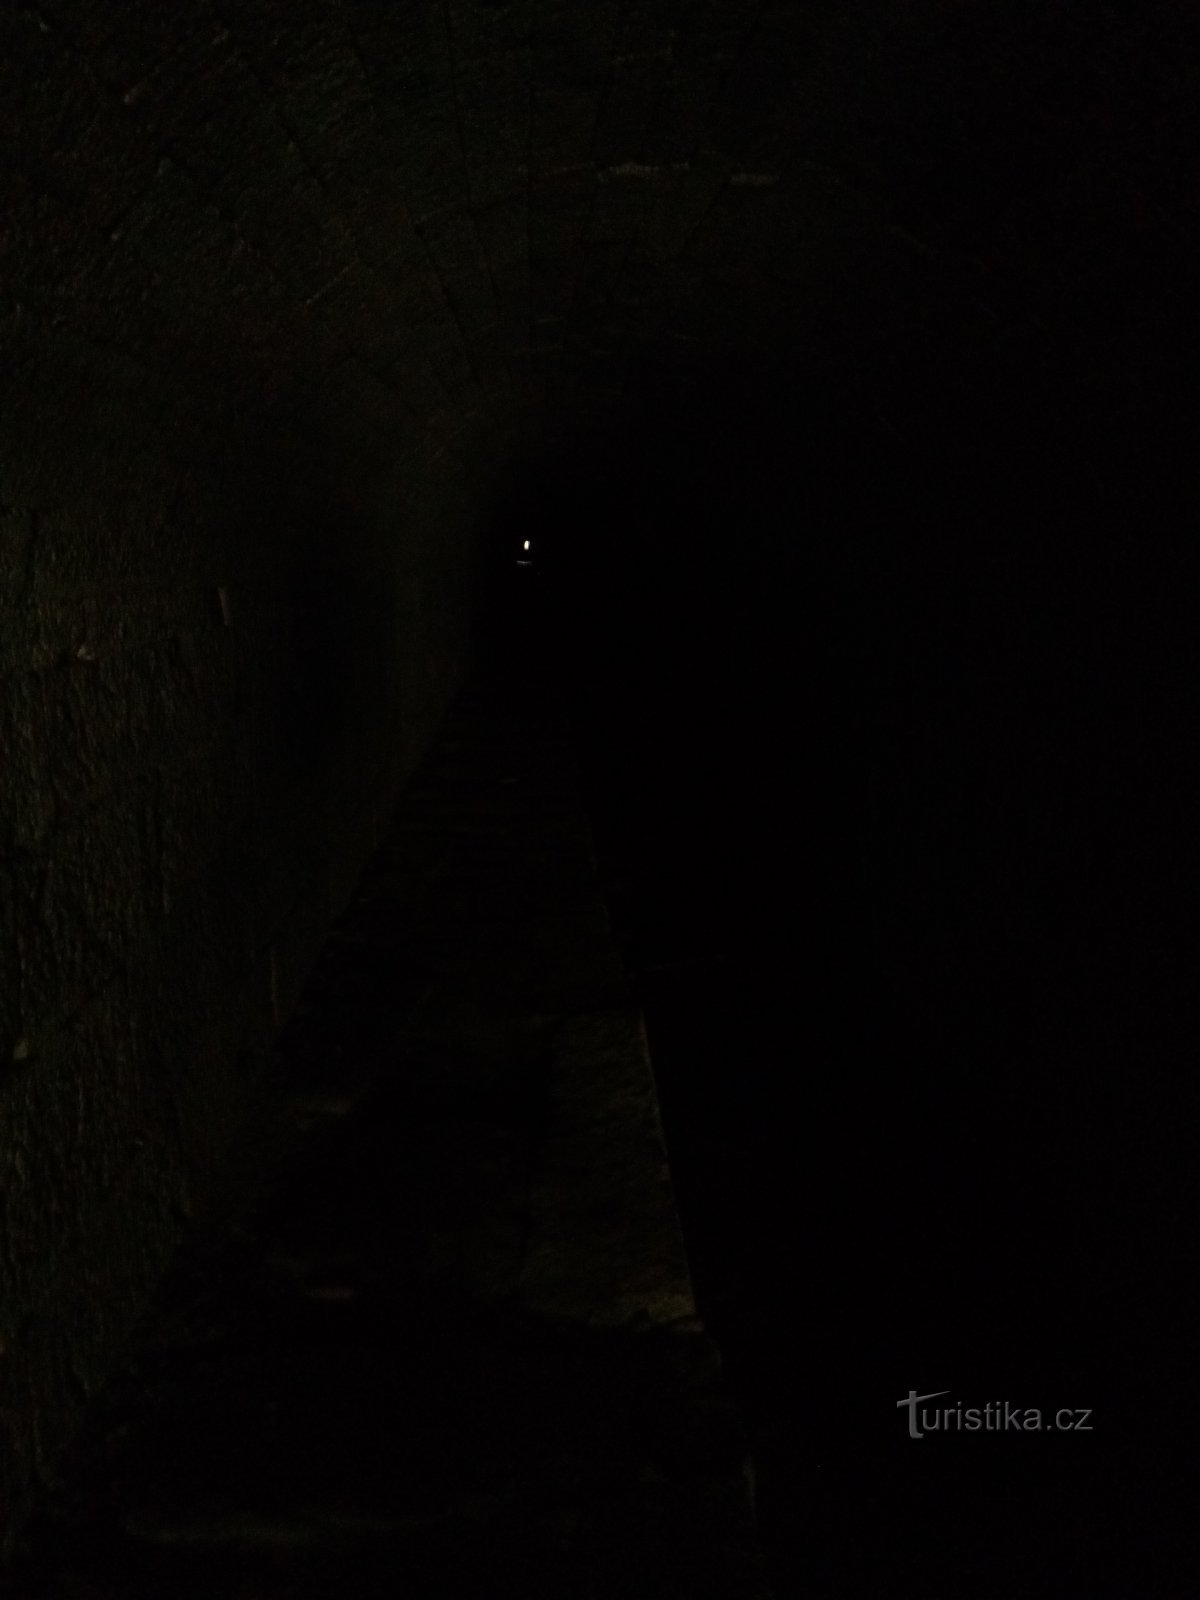 Ánh sáng ở cuối đường hầm